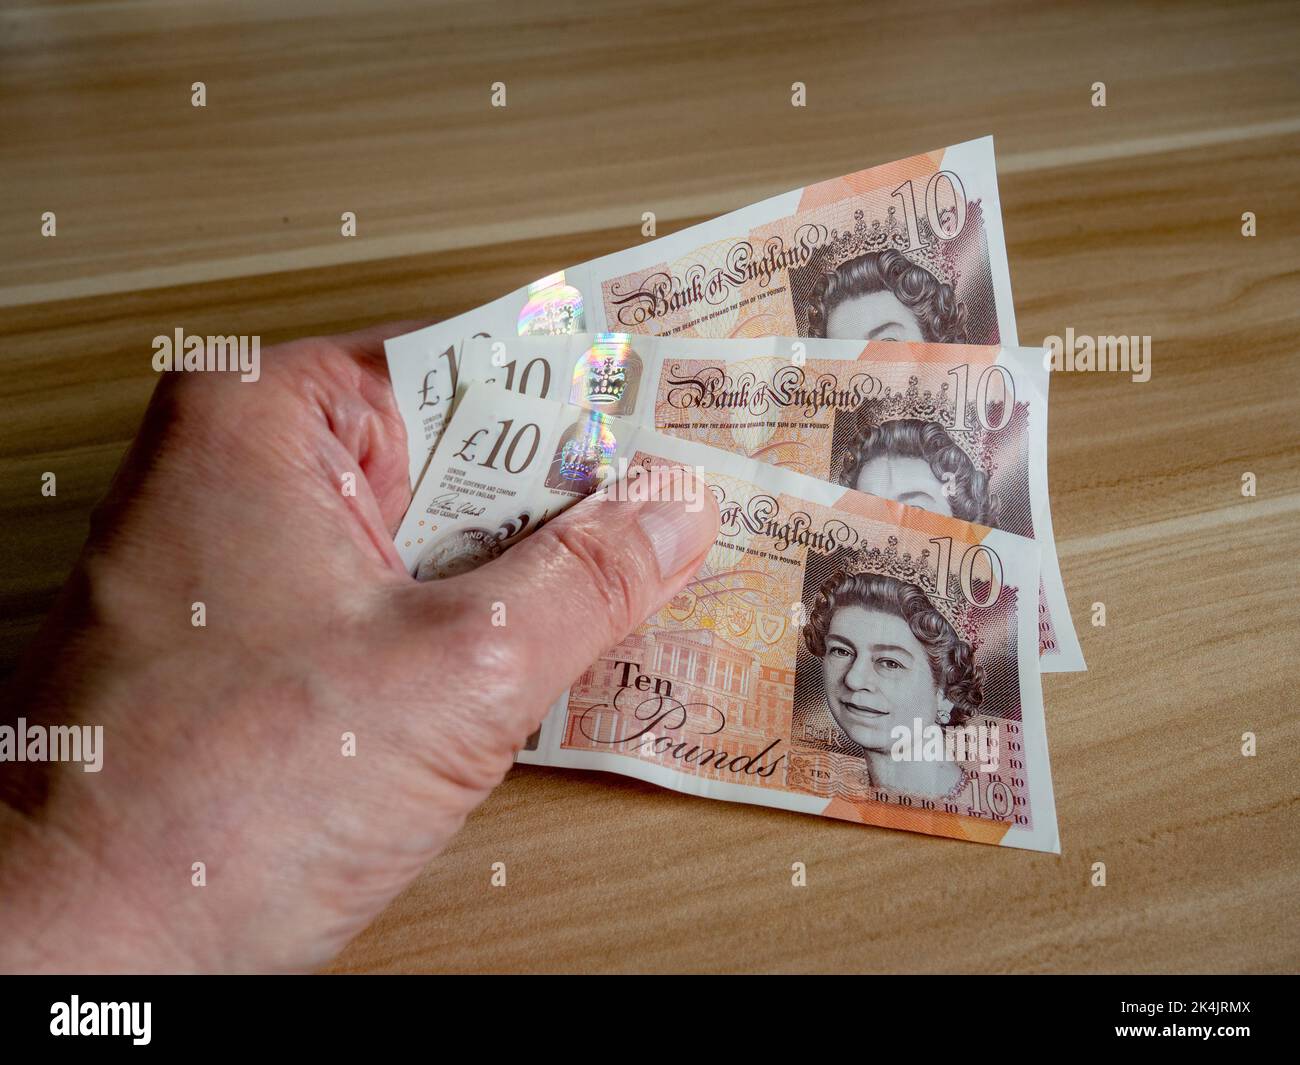 Mano dell'uomo che tiene tre note £10 che caratterizzano la testa della regina Elisabetta II - una delle molte cose che richiedono la modifica dopo la sua morte. Foto Stock